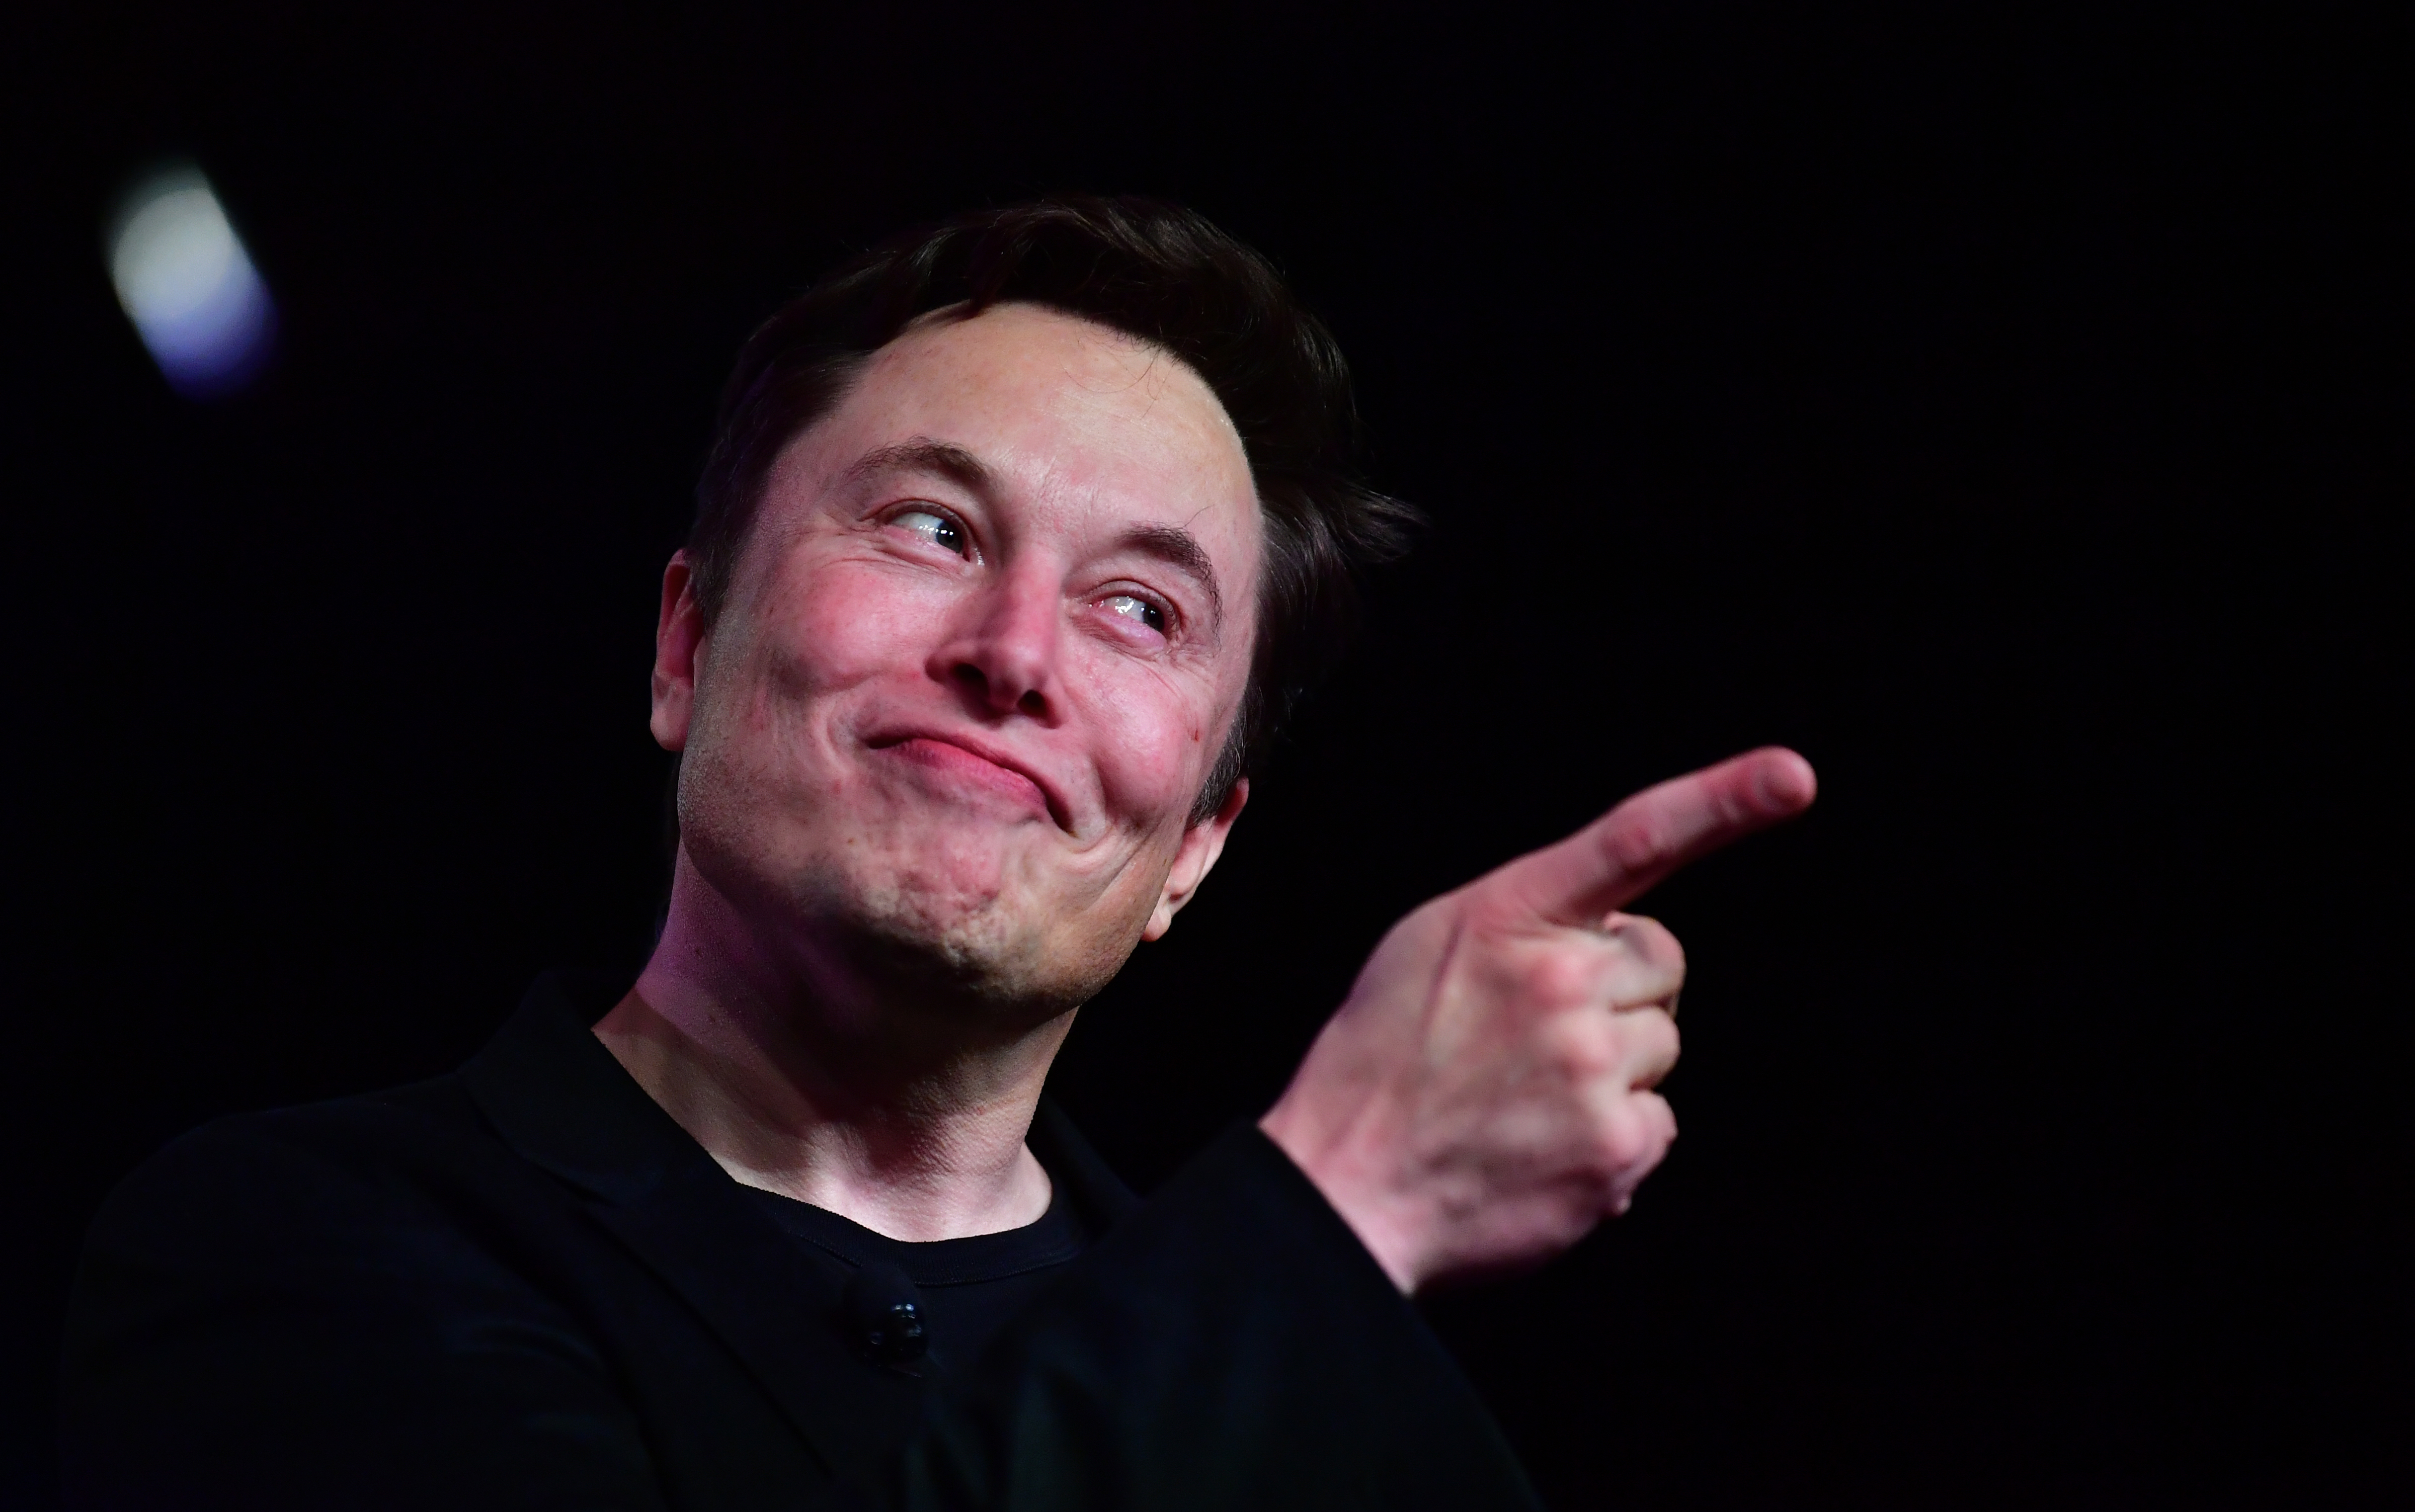 Elon Musk el akarja költöztetni a Teslát Kaliforniából, mert nem indíthatja újra a járvány miatt leállított autógyártást